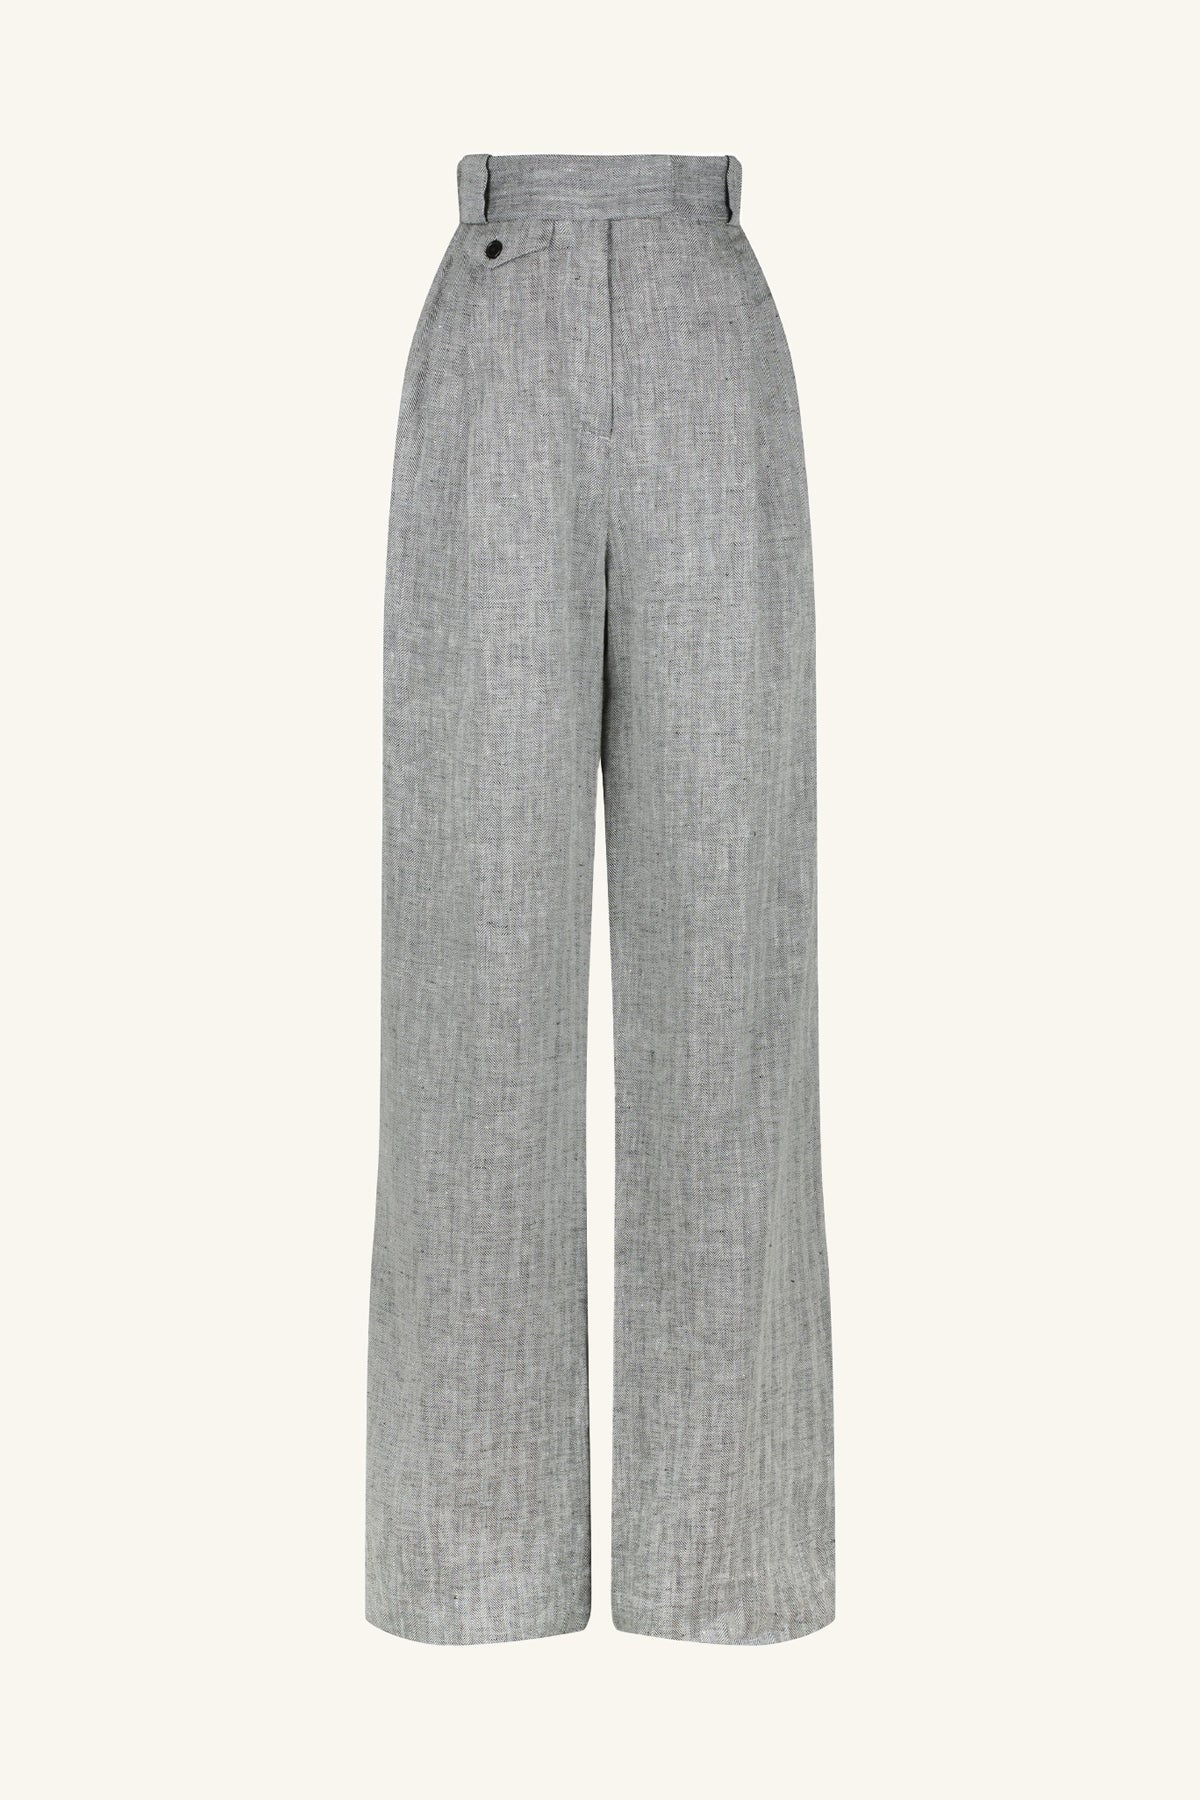 Gloria Vanderbilt Women's Amanda Trouser Pants Perfect Khaki Size 14 Petite  NWT | eBay